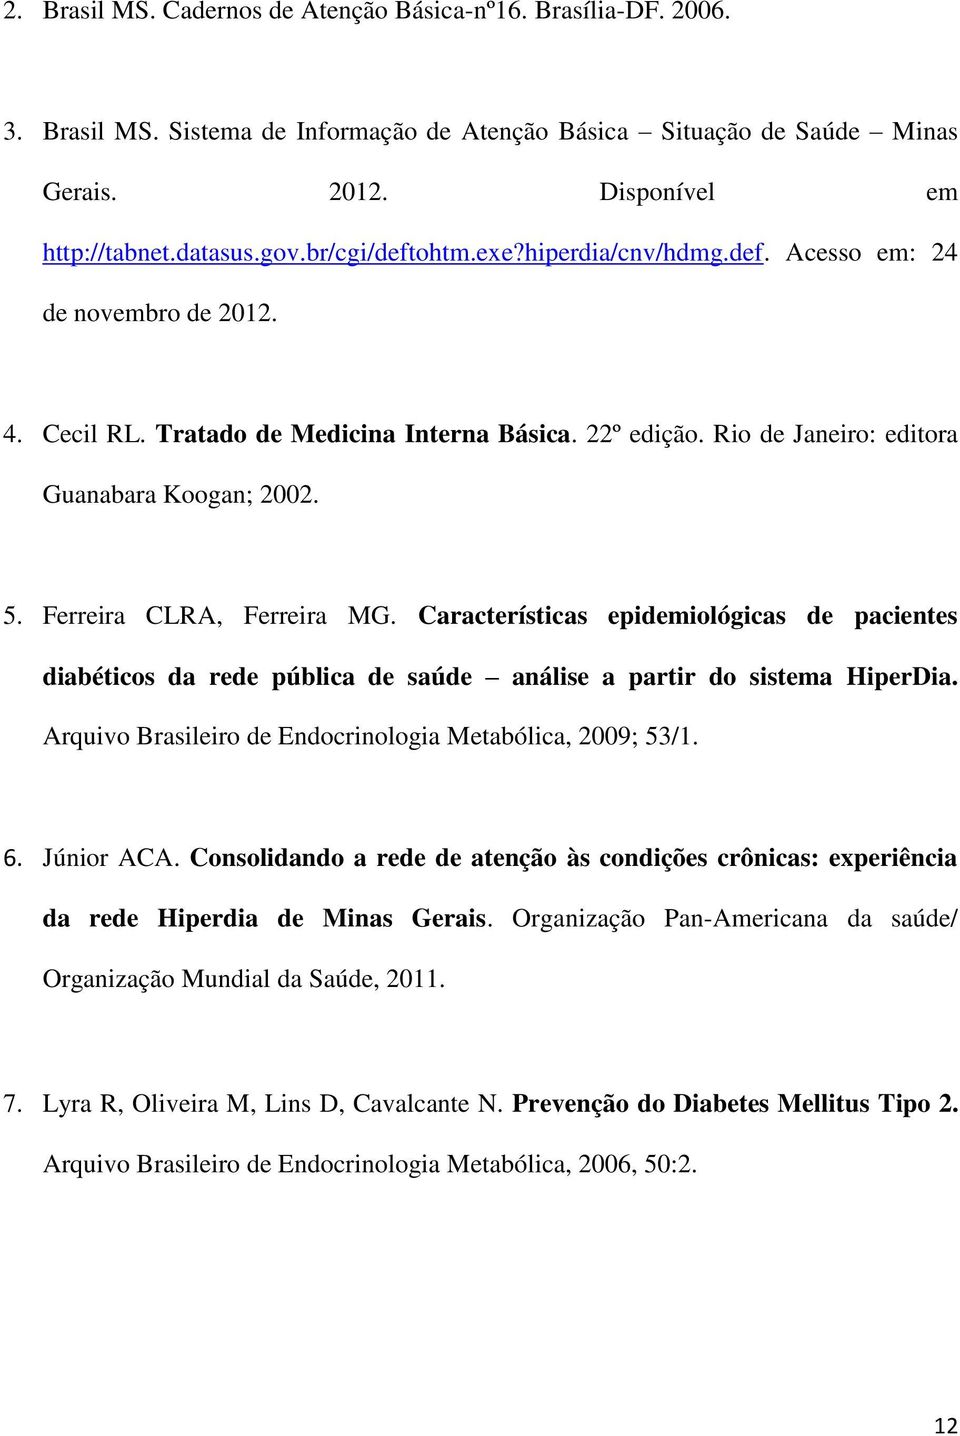 Ferreira CLRA, Ferreira MG. Características epidemiológicas de pacientes diabéticos da rede pública de saúde análise a partir do sistema HiperDia.